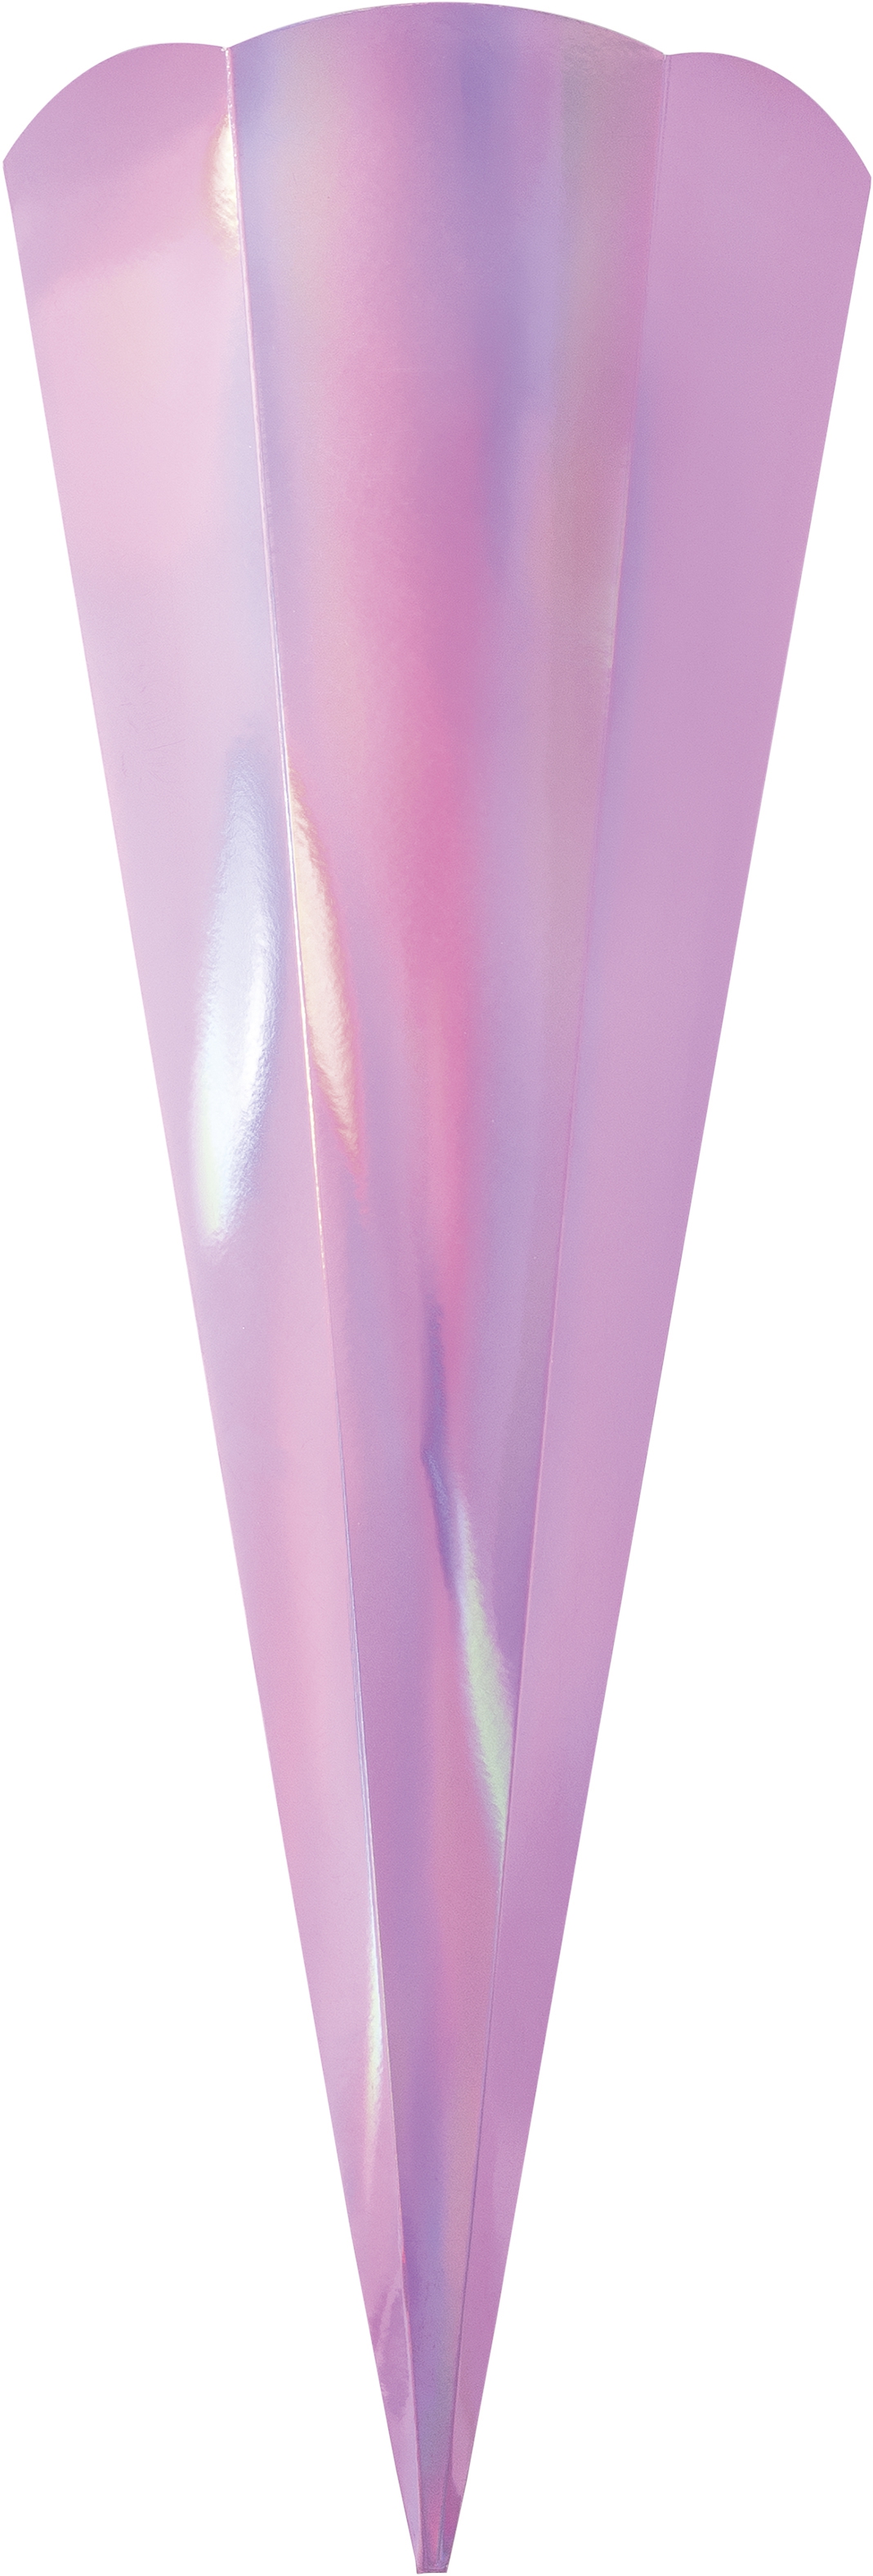 Schultüten Metallic irisierend pink, 5 Stück